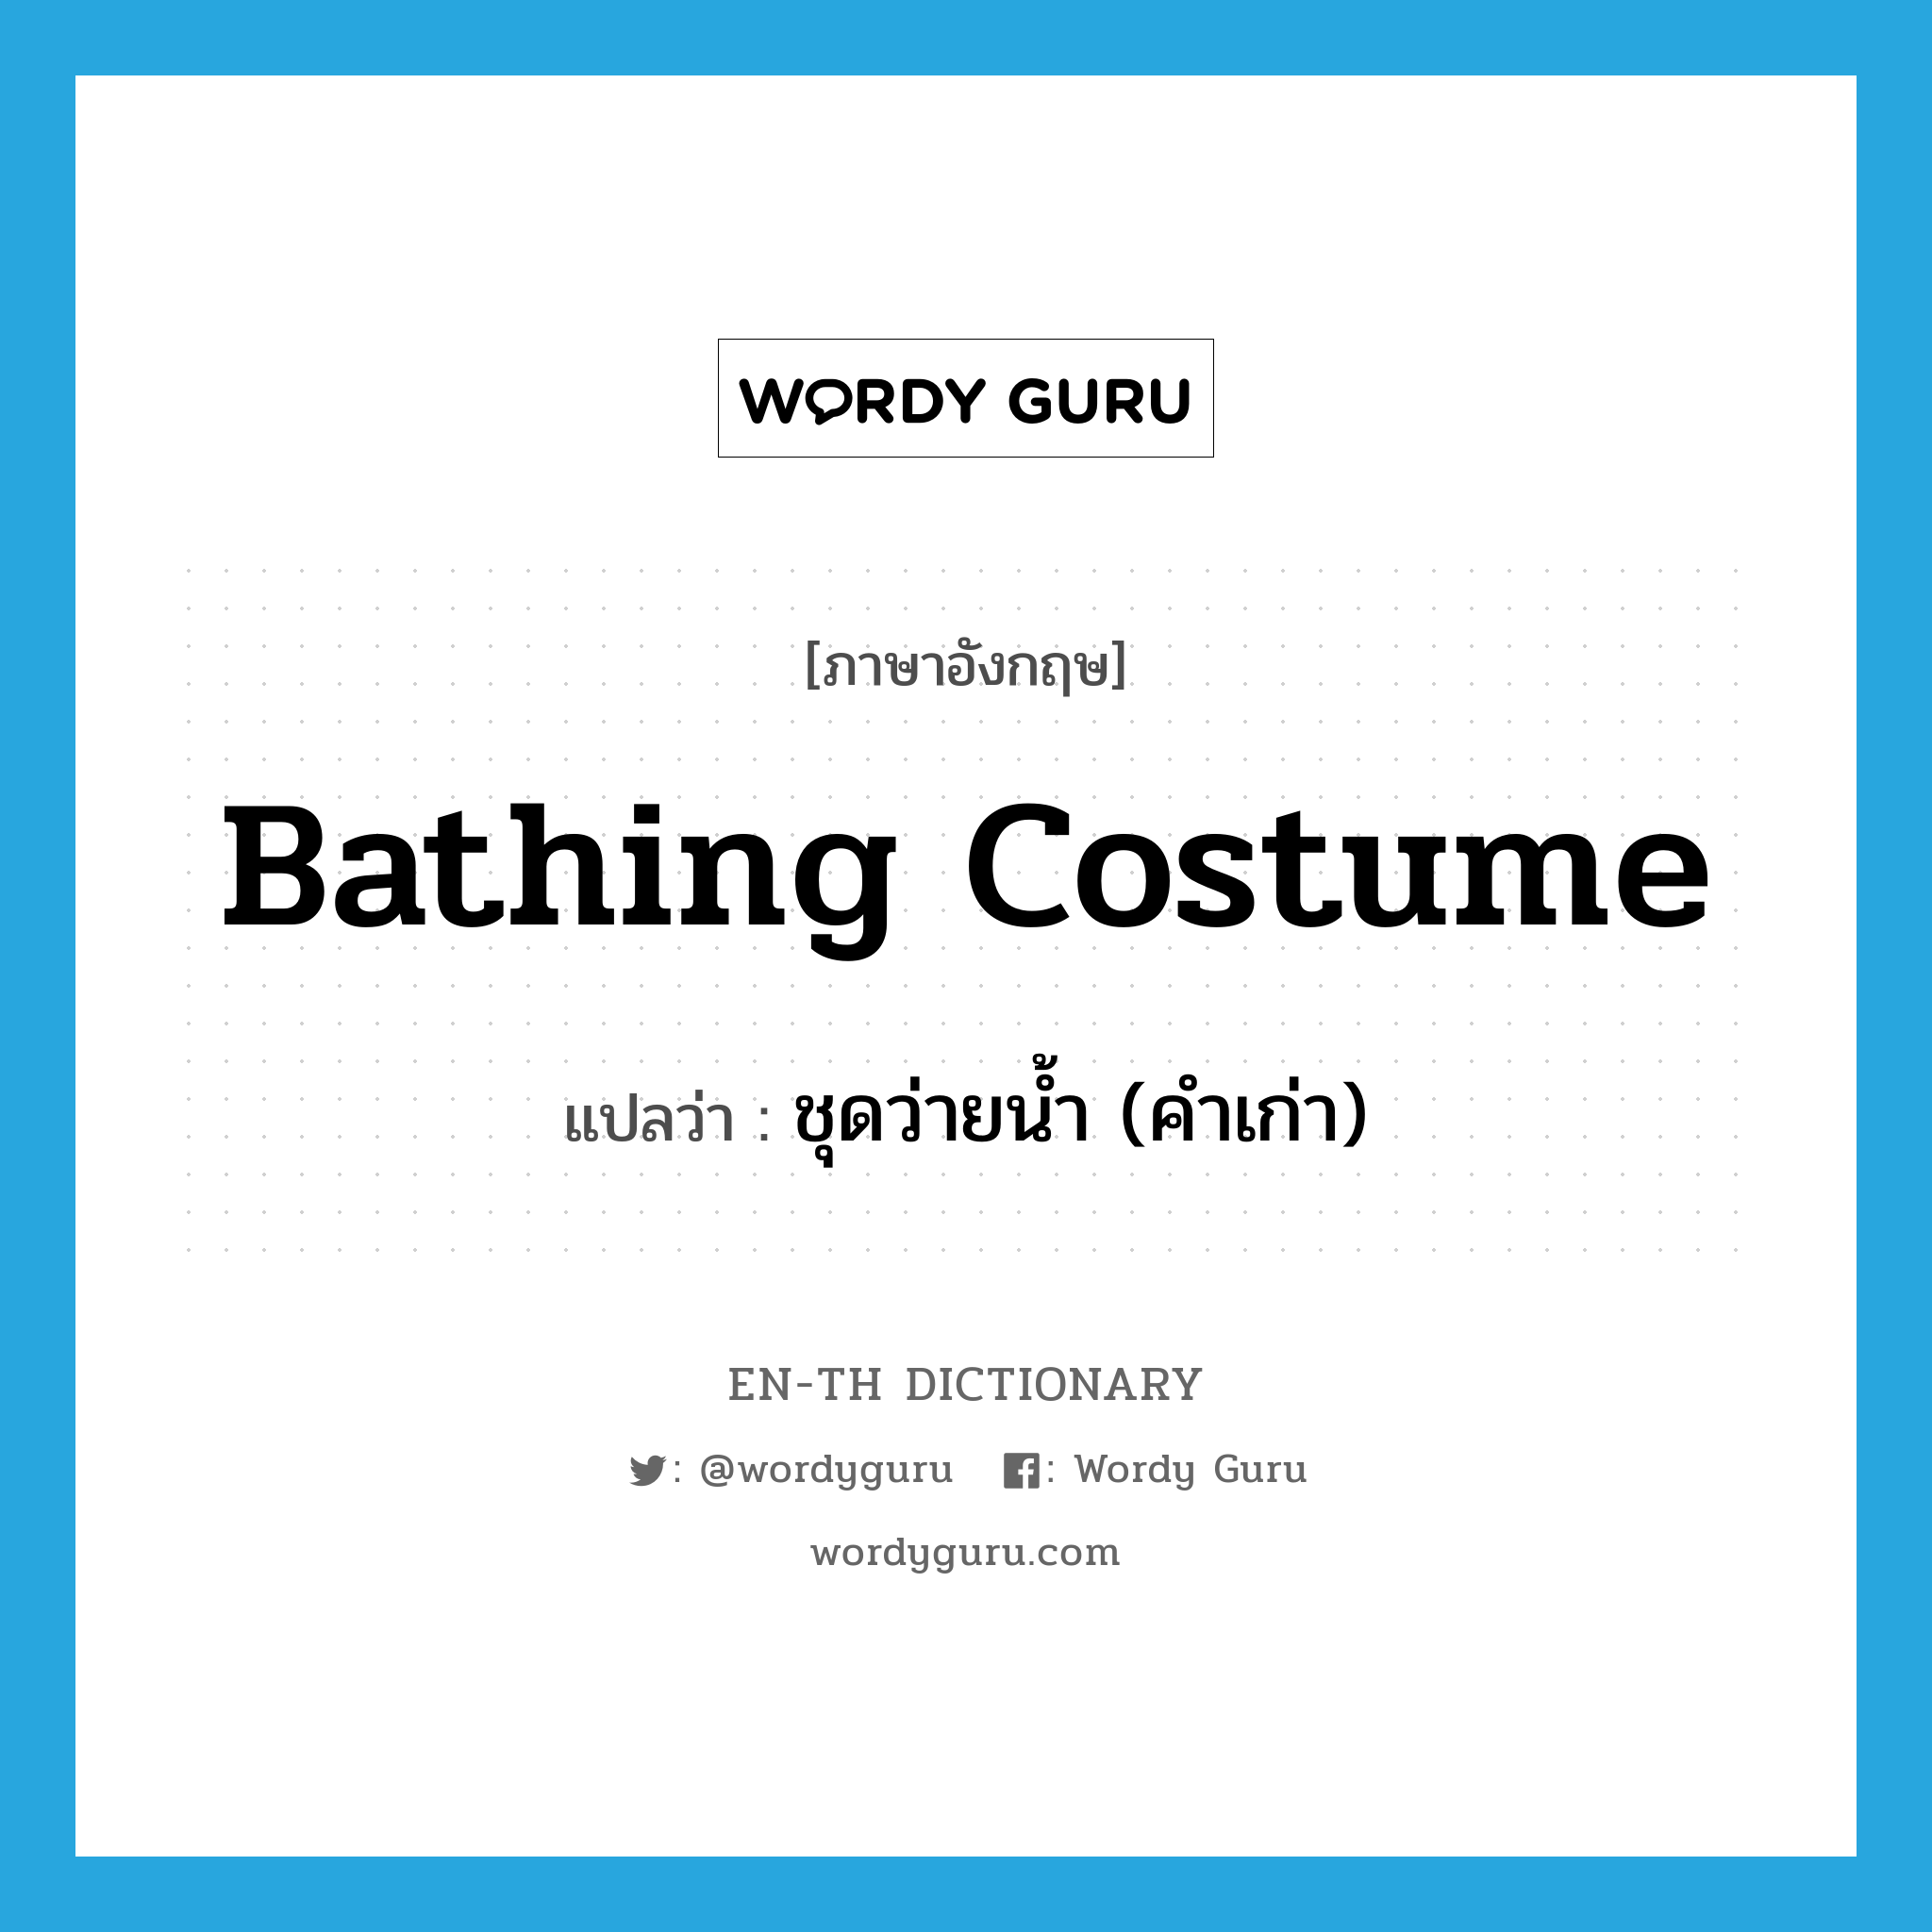 ชุดว่ายน้ำ (คำเก่า) ภาษาอังกฤษ?, คำศัพท์ภาษาอังกฤษ ชุดว่ายน้ำ (คำเก่า) แปลว่า bathing costume ประเภท N หมวด N